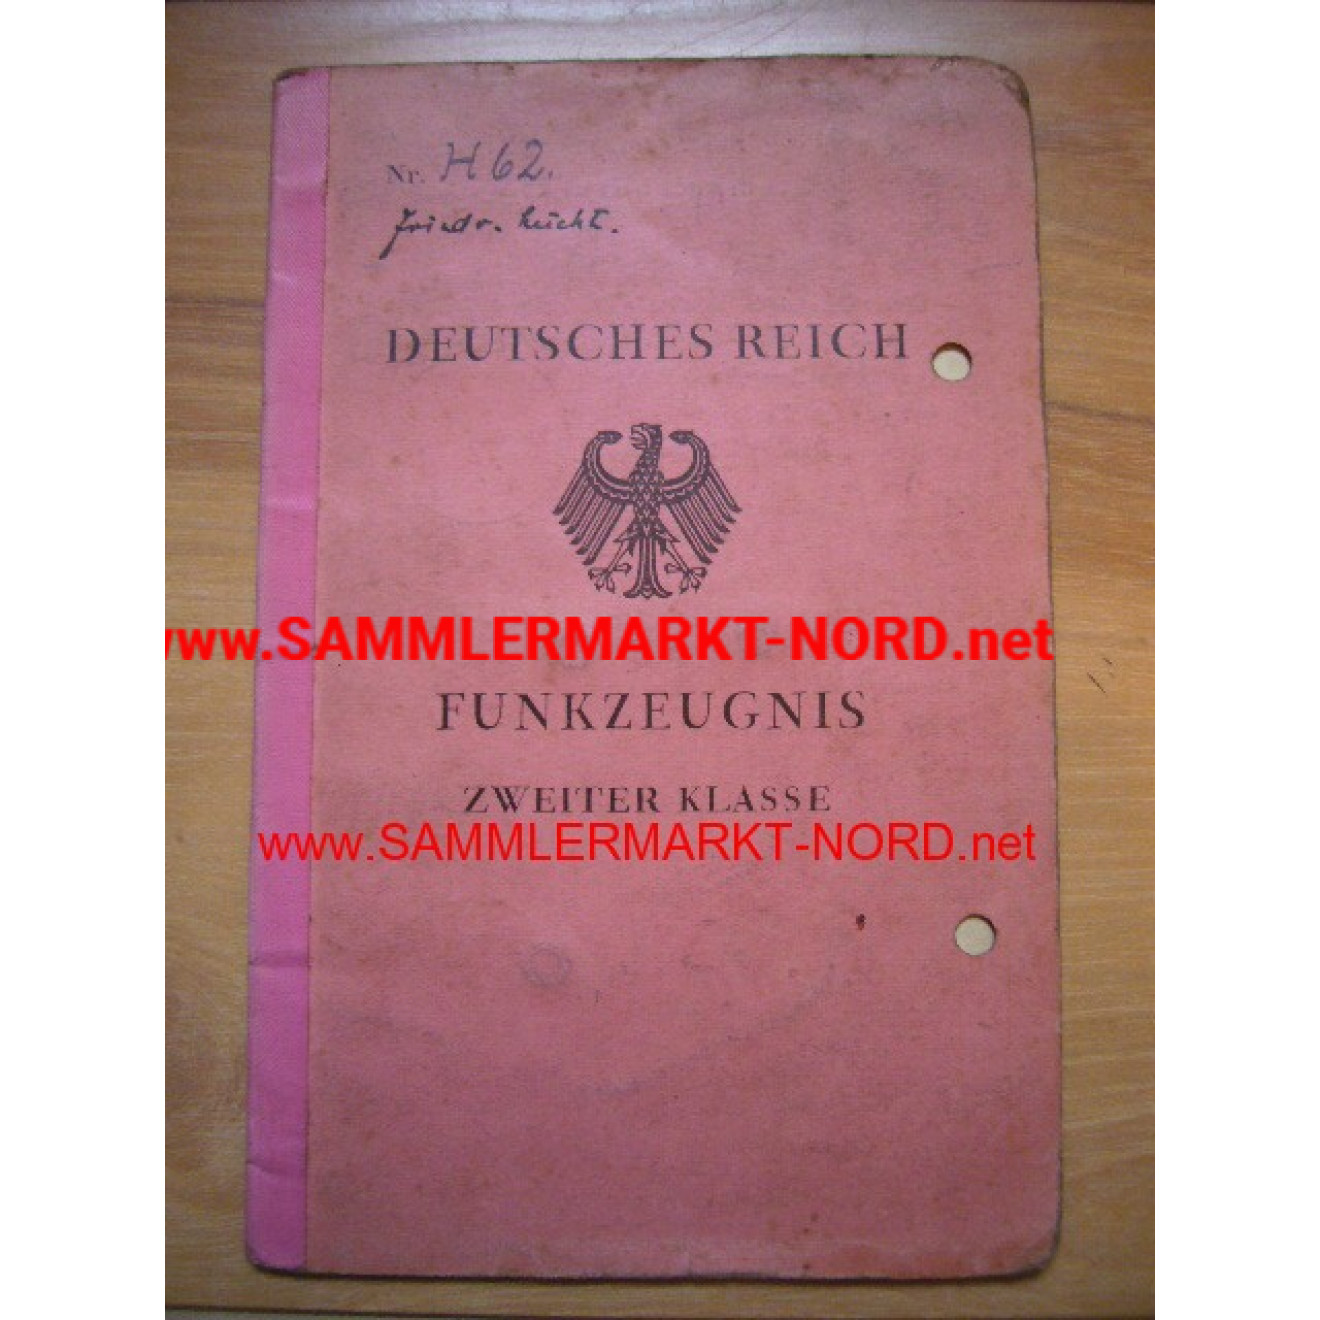 Deutsches Reich - Funkzeugnis 2. Klasse